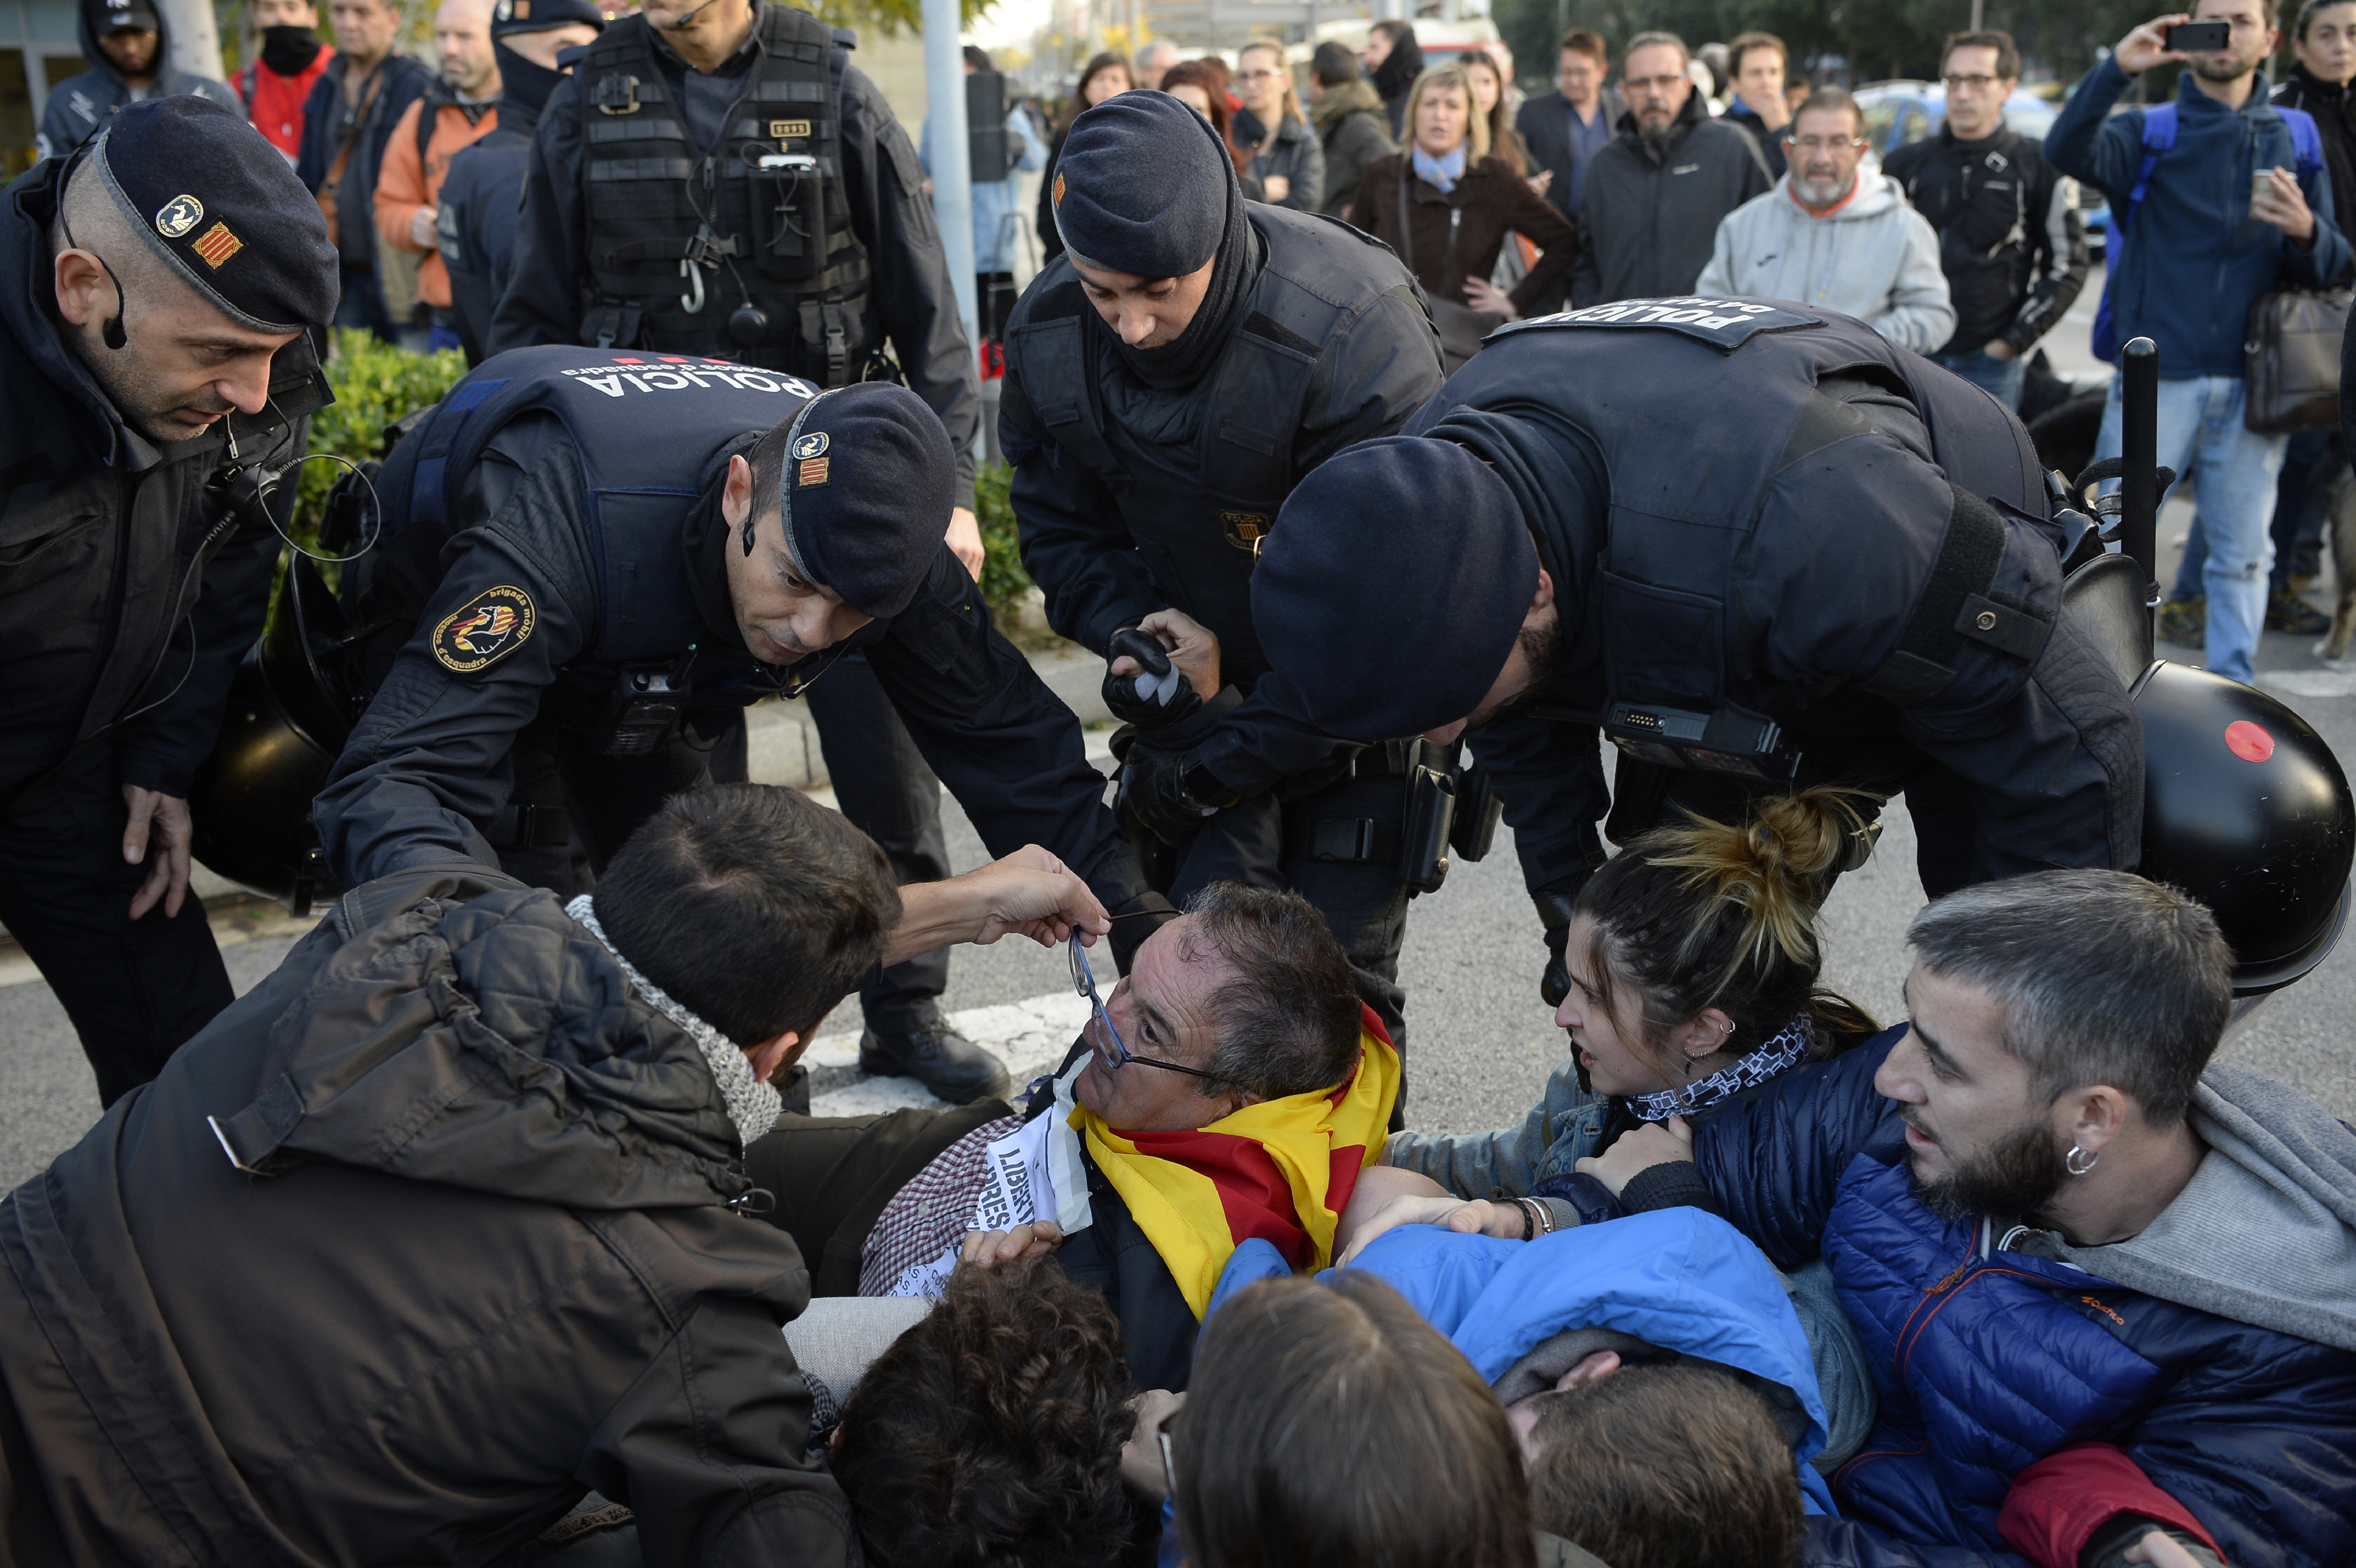 A spanyol alkotmánybíróság megsemmisítette a katalán függetlenségi nyilatkozatot 